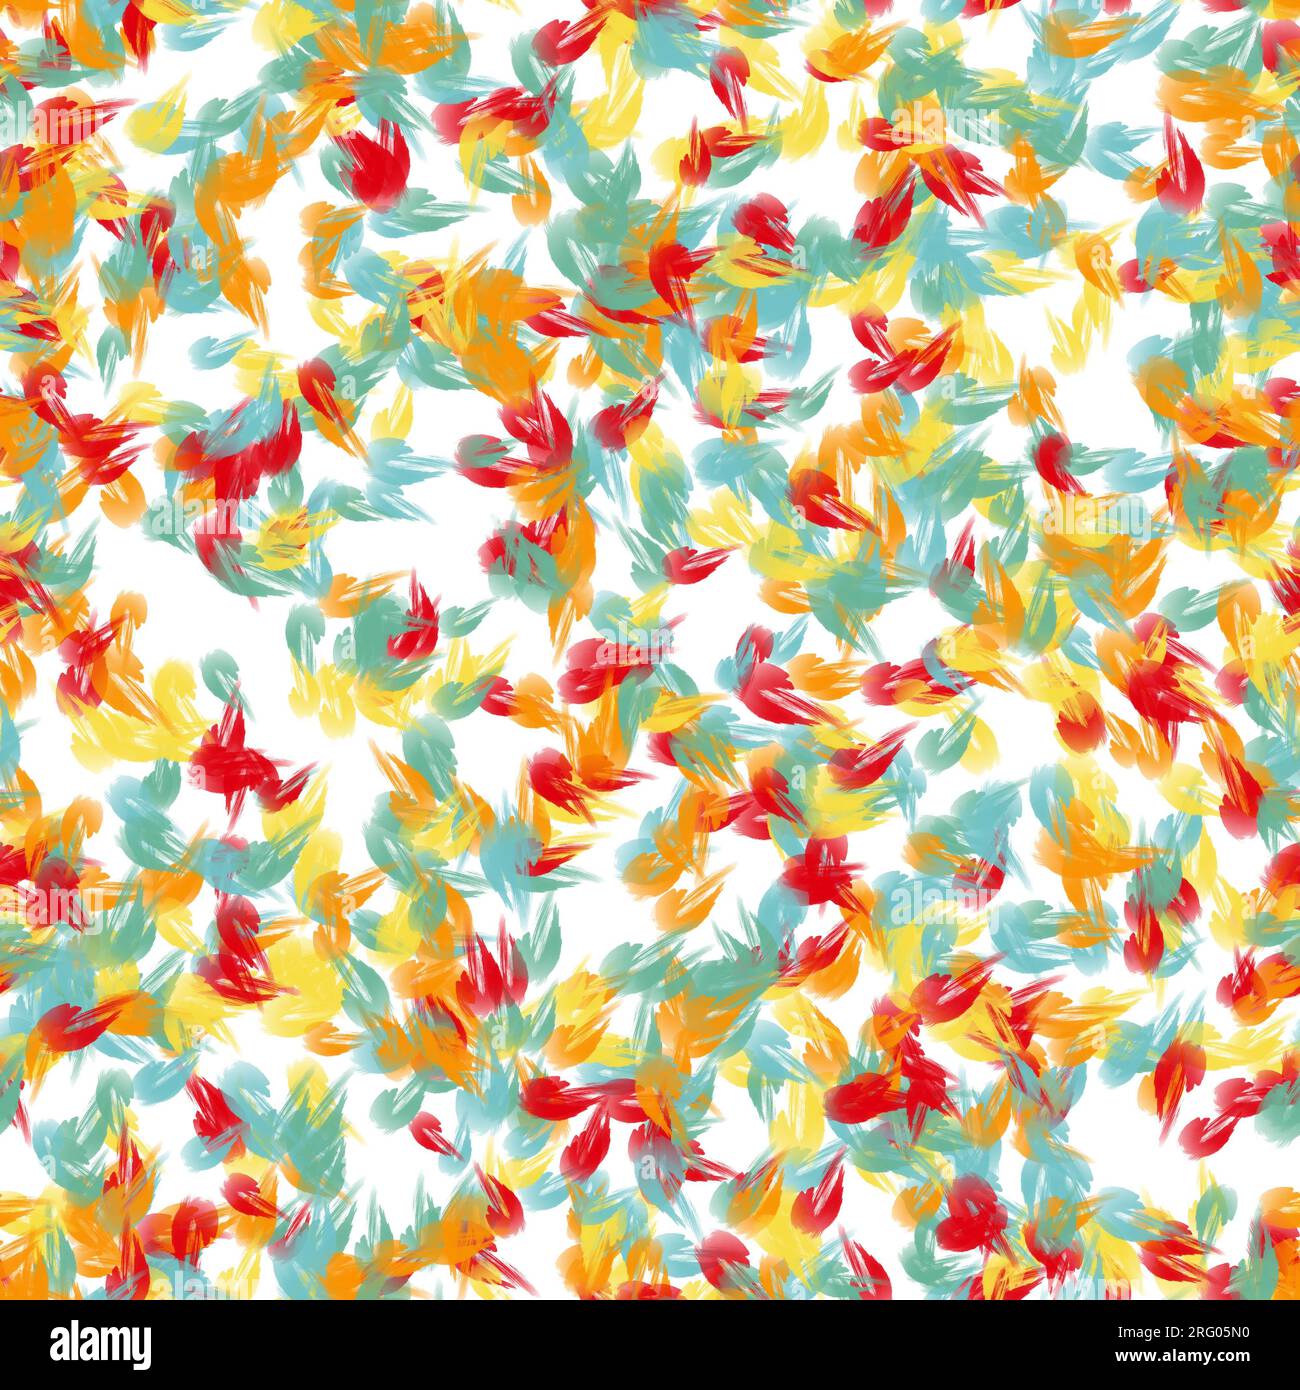 Rote, orangefarbene, gelbe und blaue, chaotische Pinselstriche. Vogelfedern-Imitation. Nahtloses Muster. Stockfoto